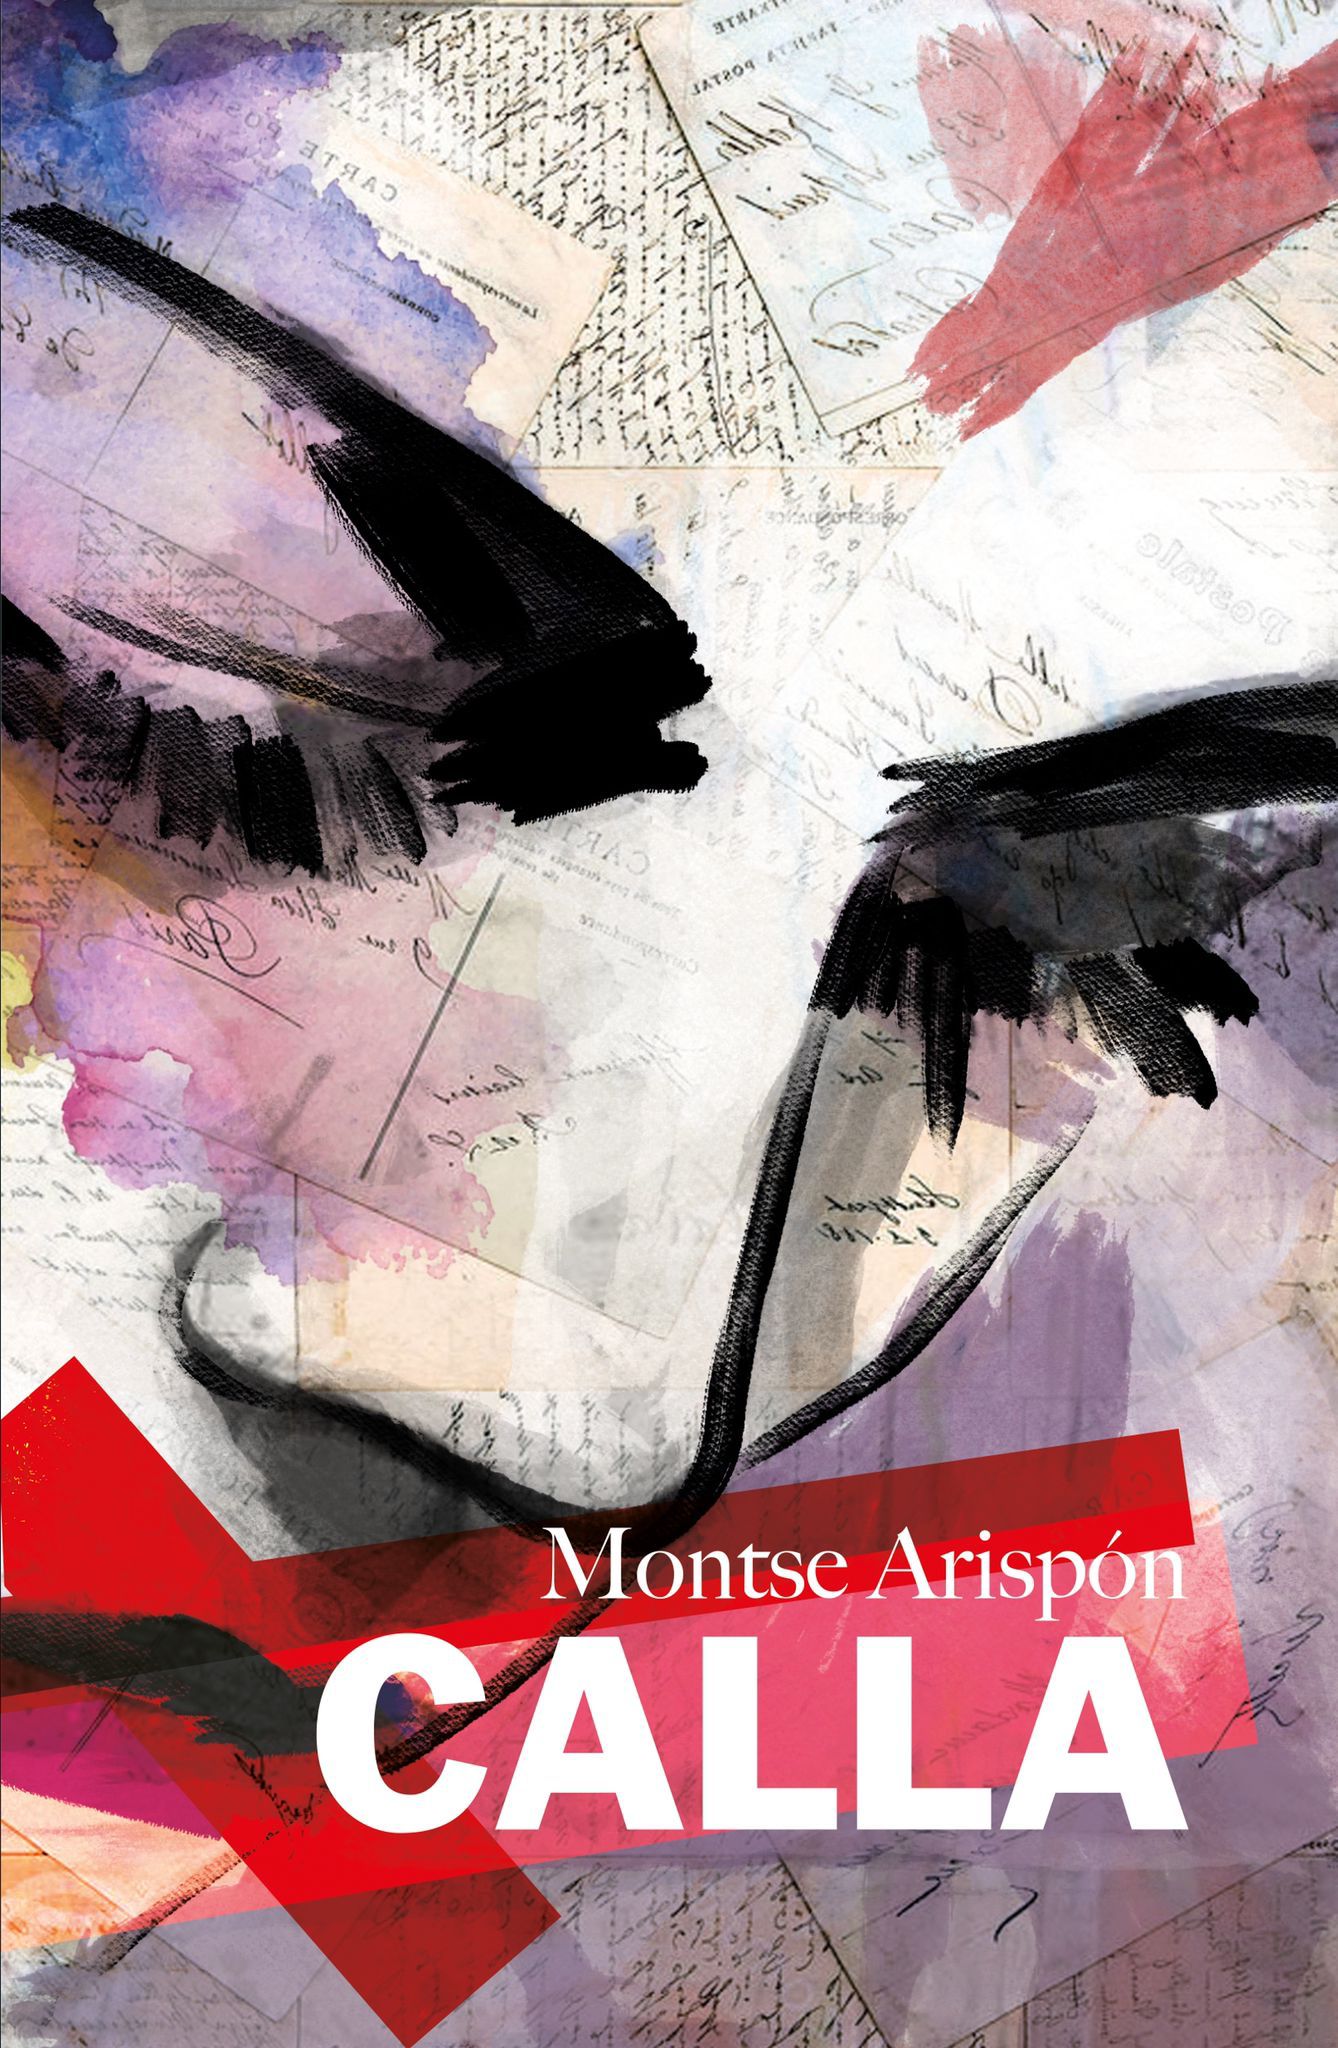 La escritora utrerana, Montse Arispón, presentará su novela «Calla» en la biblioteca municipal el día 27 de septiembre